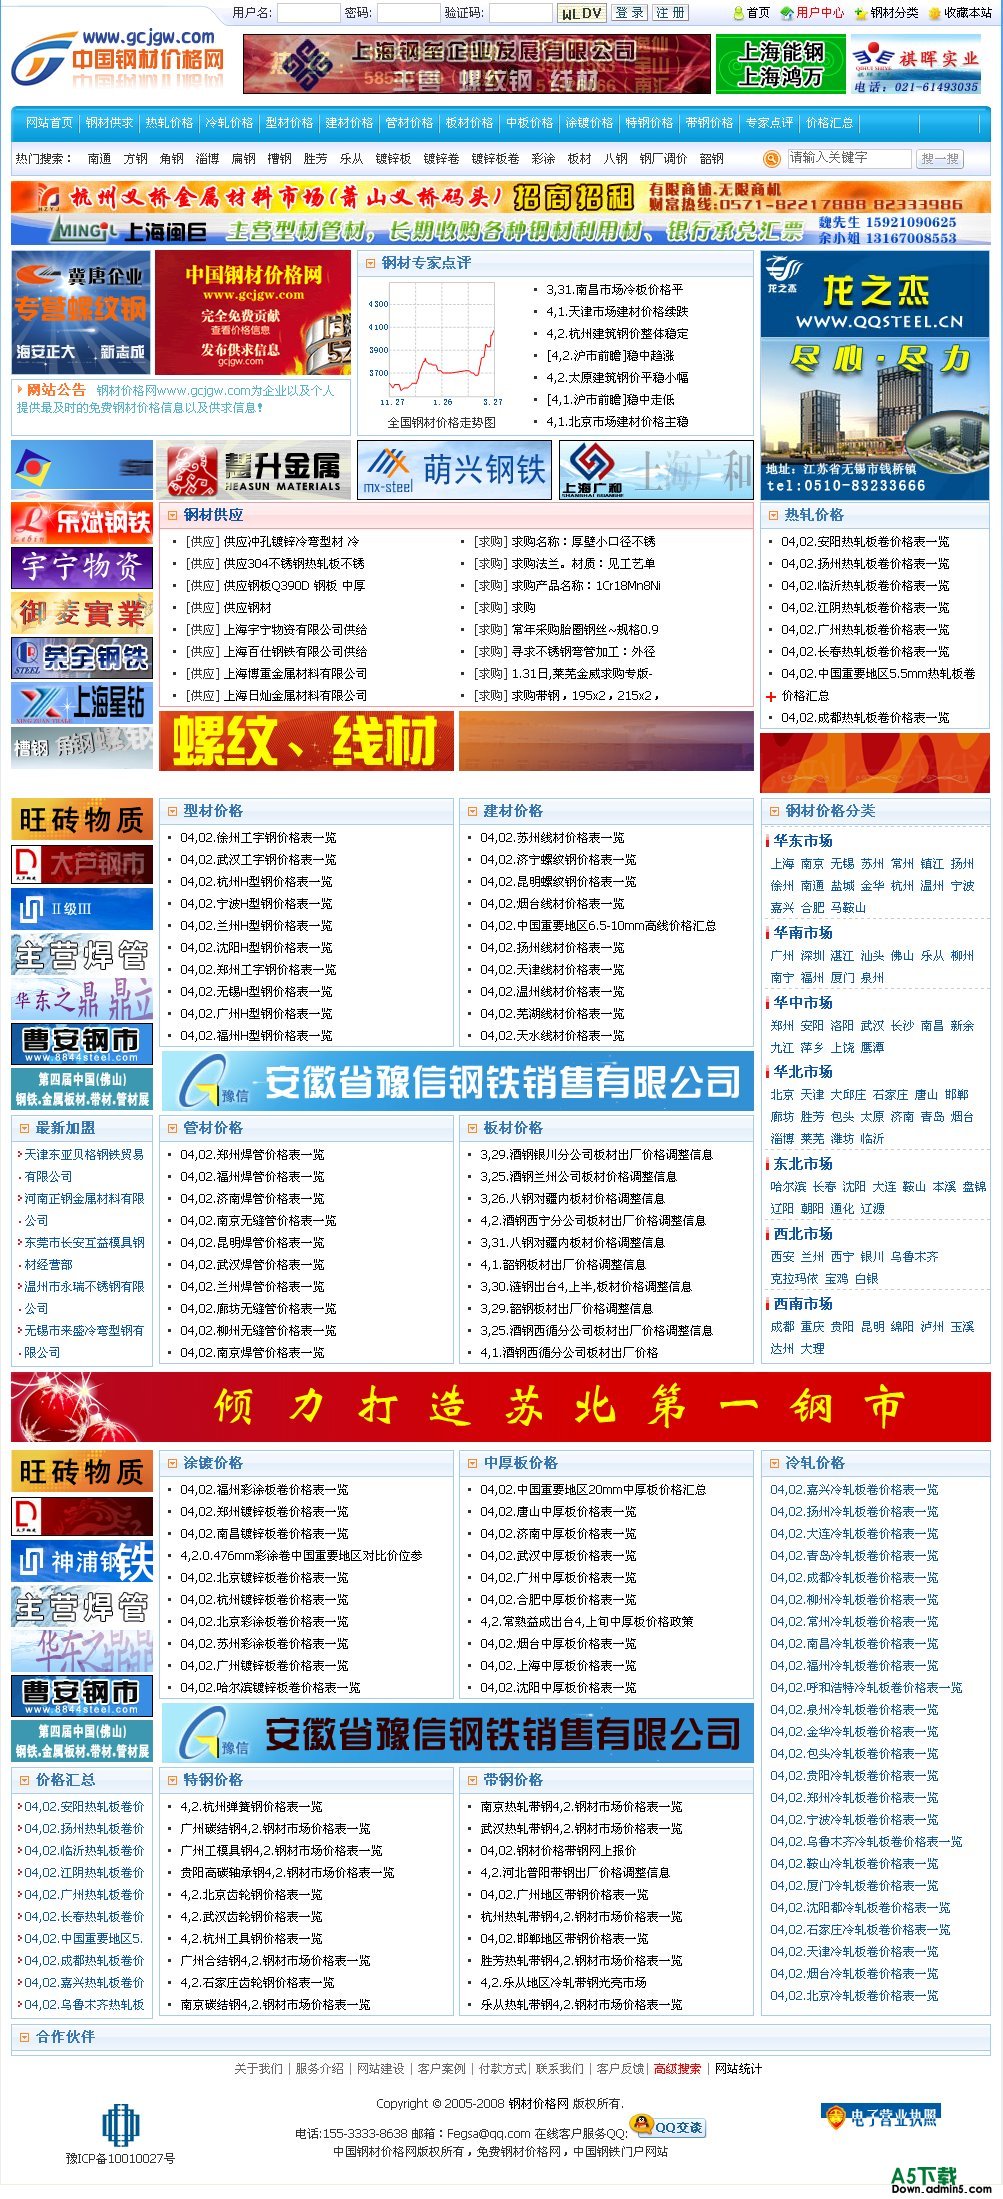 中国钢材价格网钢铁门户网站全站程序 完整无错插图源码资源库